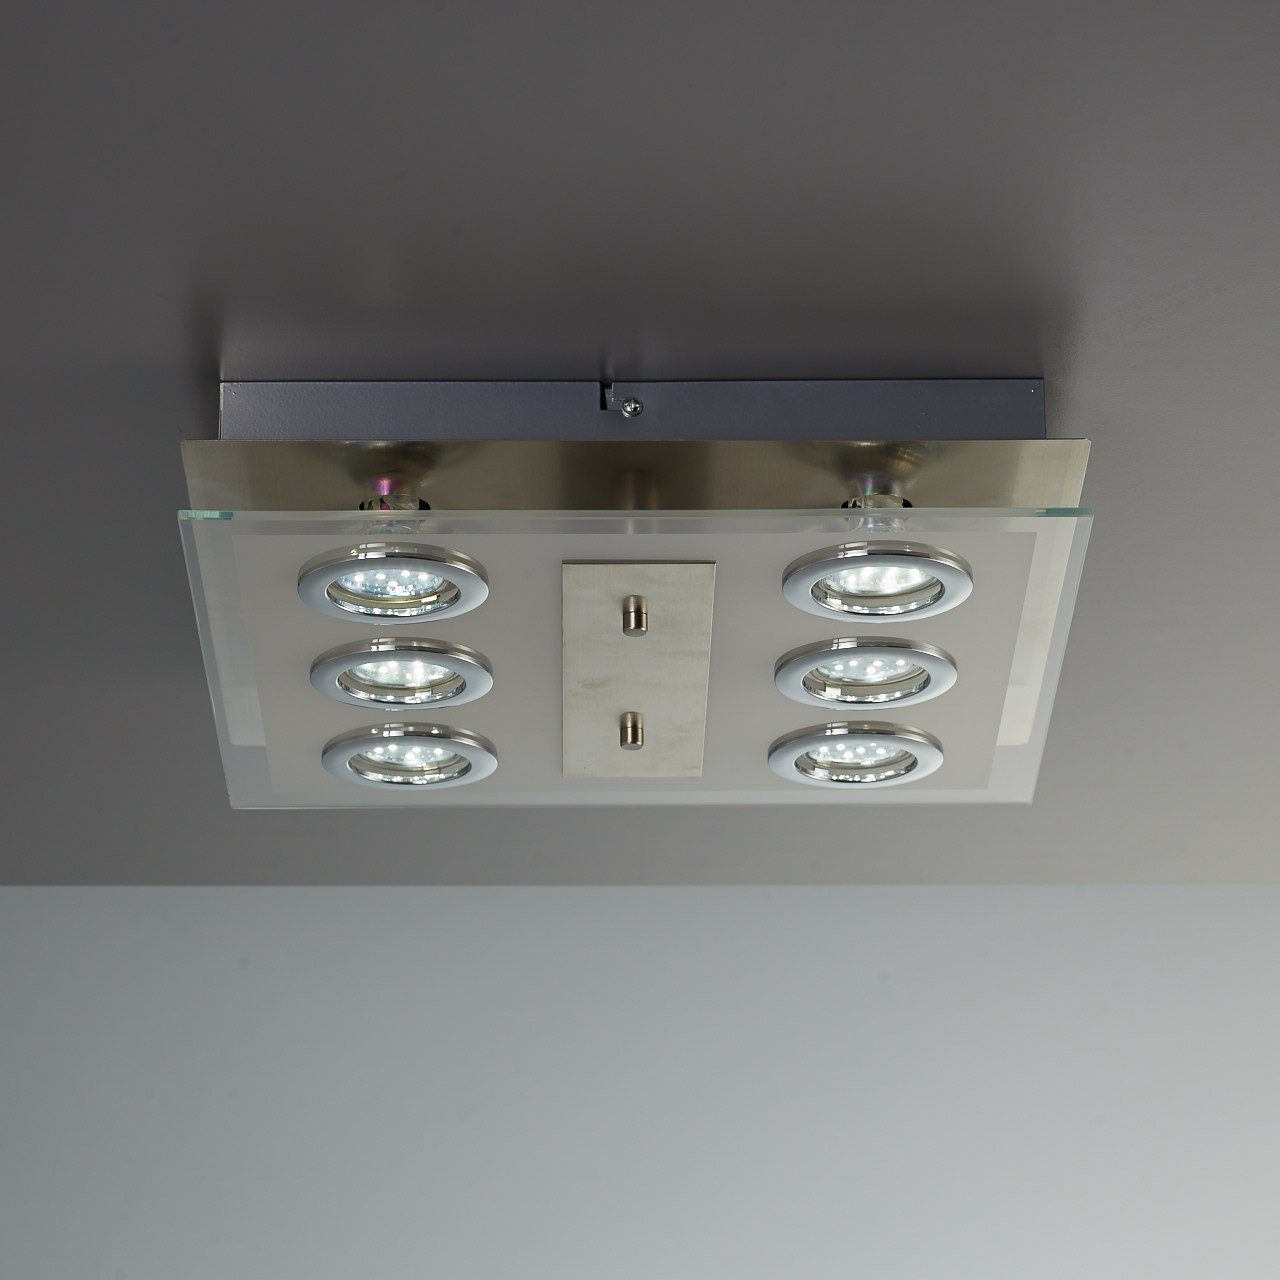 Dorado, Schlafzimmer B.K.Licht 3W GU10 inkl. Deckenlampe wechselbar, 250lm LED Warmweiß, Metall eckig LED Glas Deckenleuchte LED